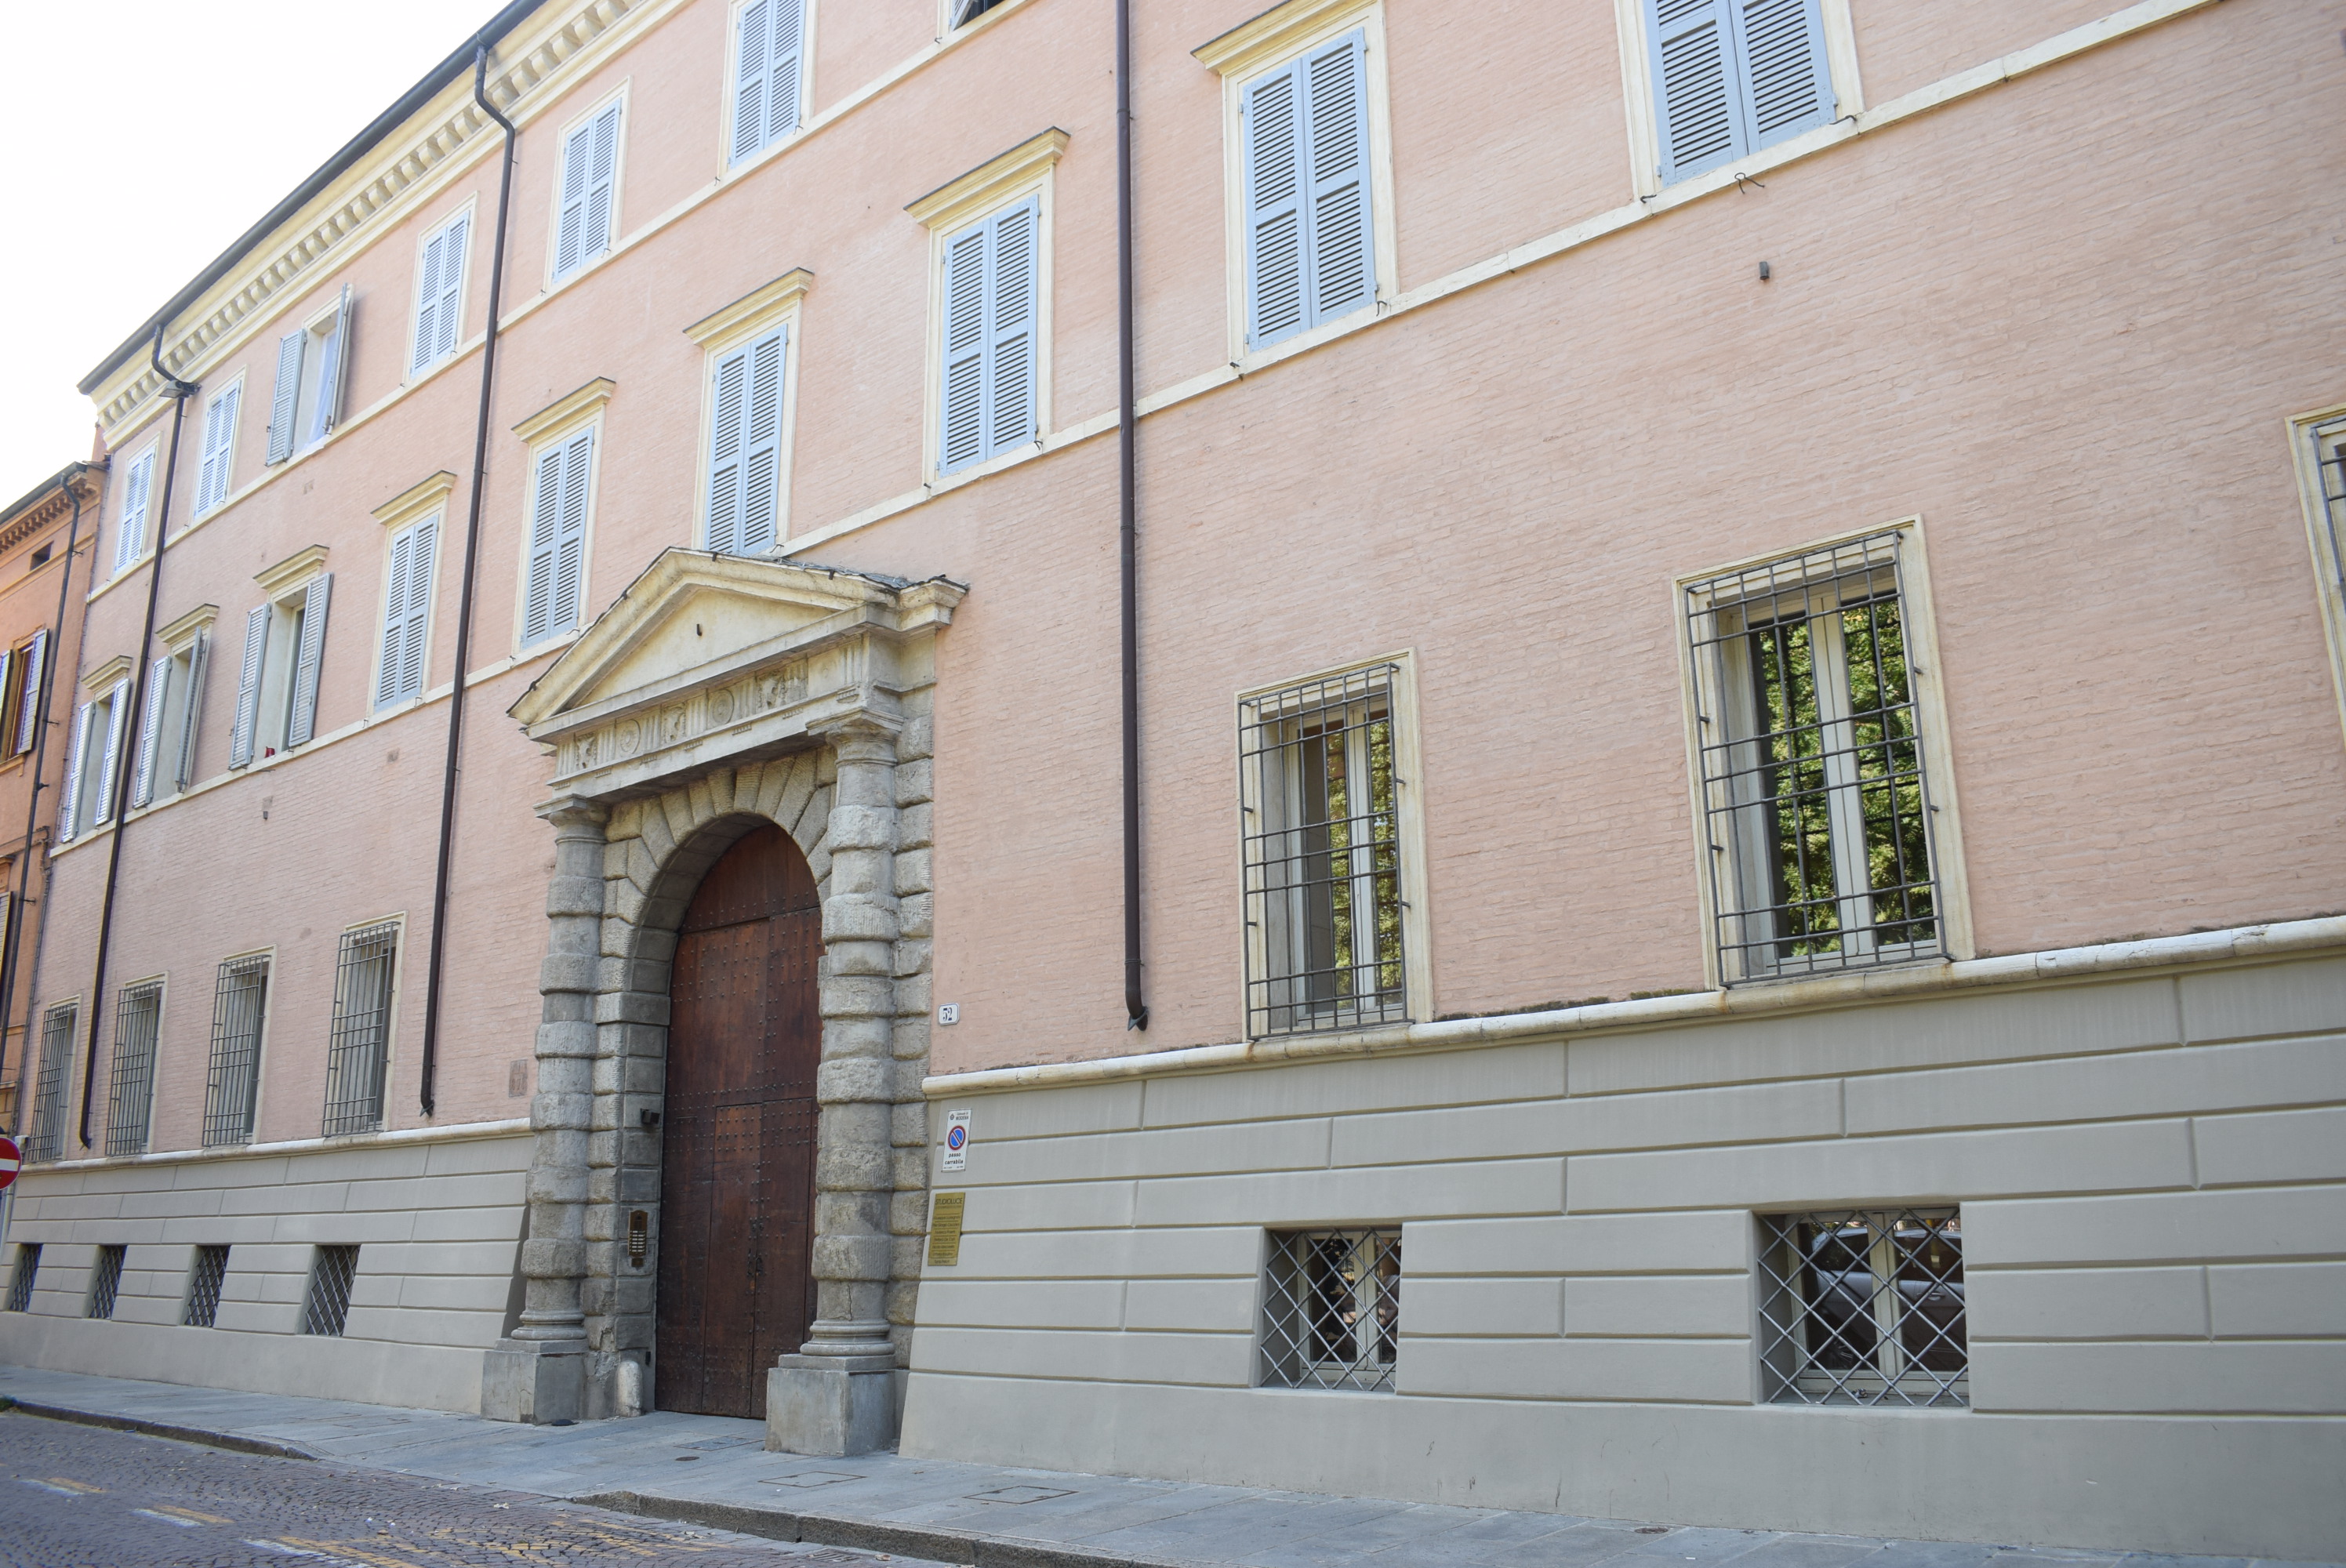 Casa Castelvetro (palazzo, nobiliare) - Modena (MO)  (sec. XIX, prima metà)